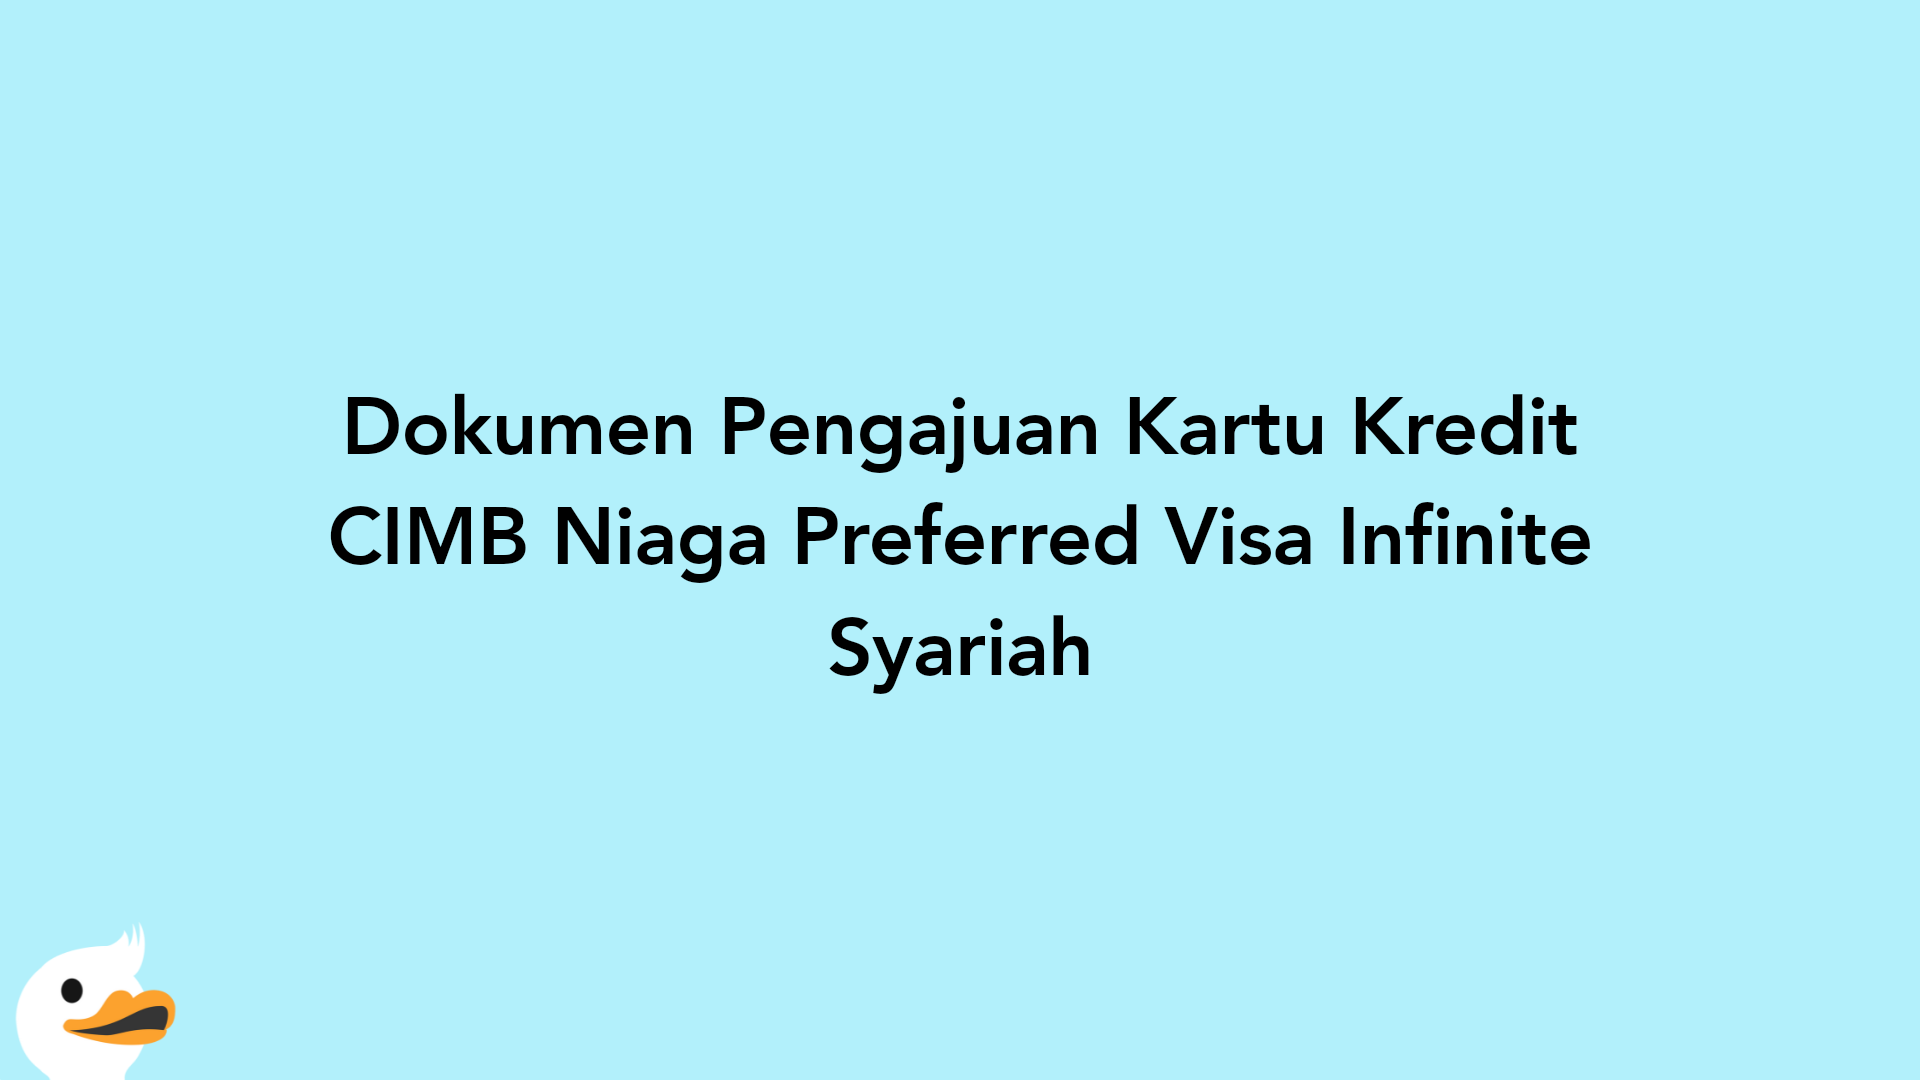 Dokumen Pengajuan Kartu Kredit CIMB Niaga Preferred Visa Infinite Syariah